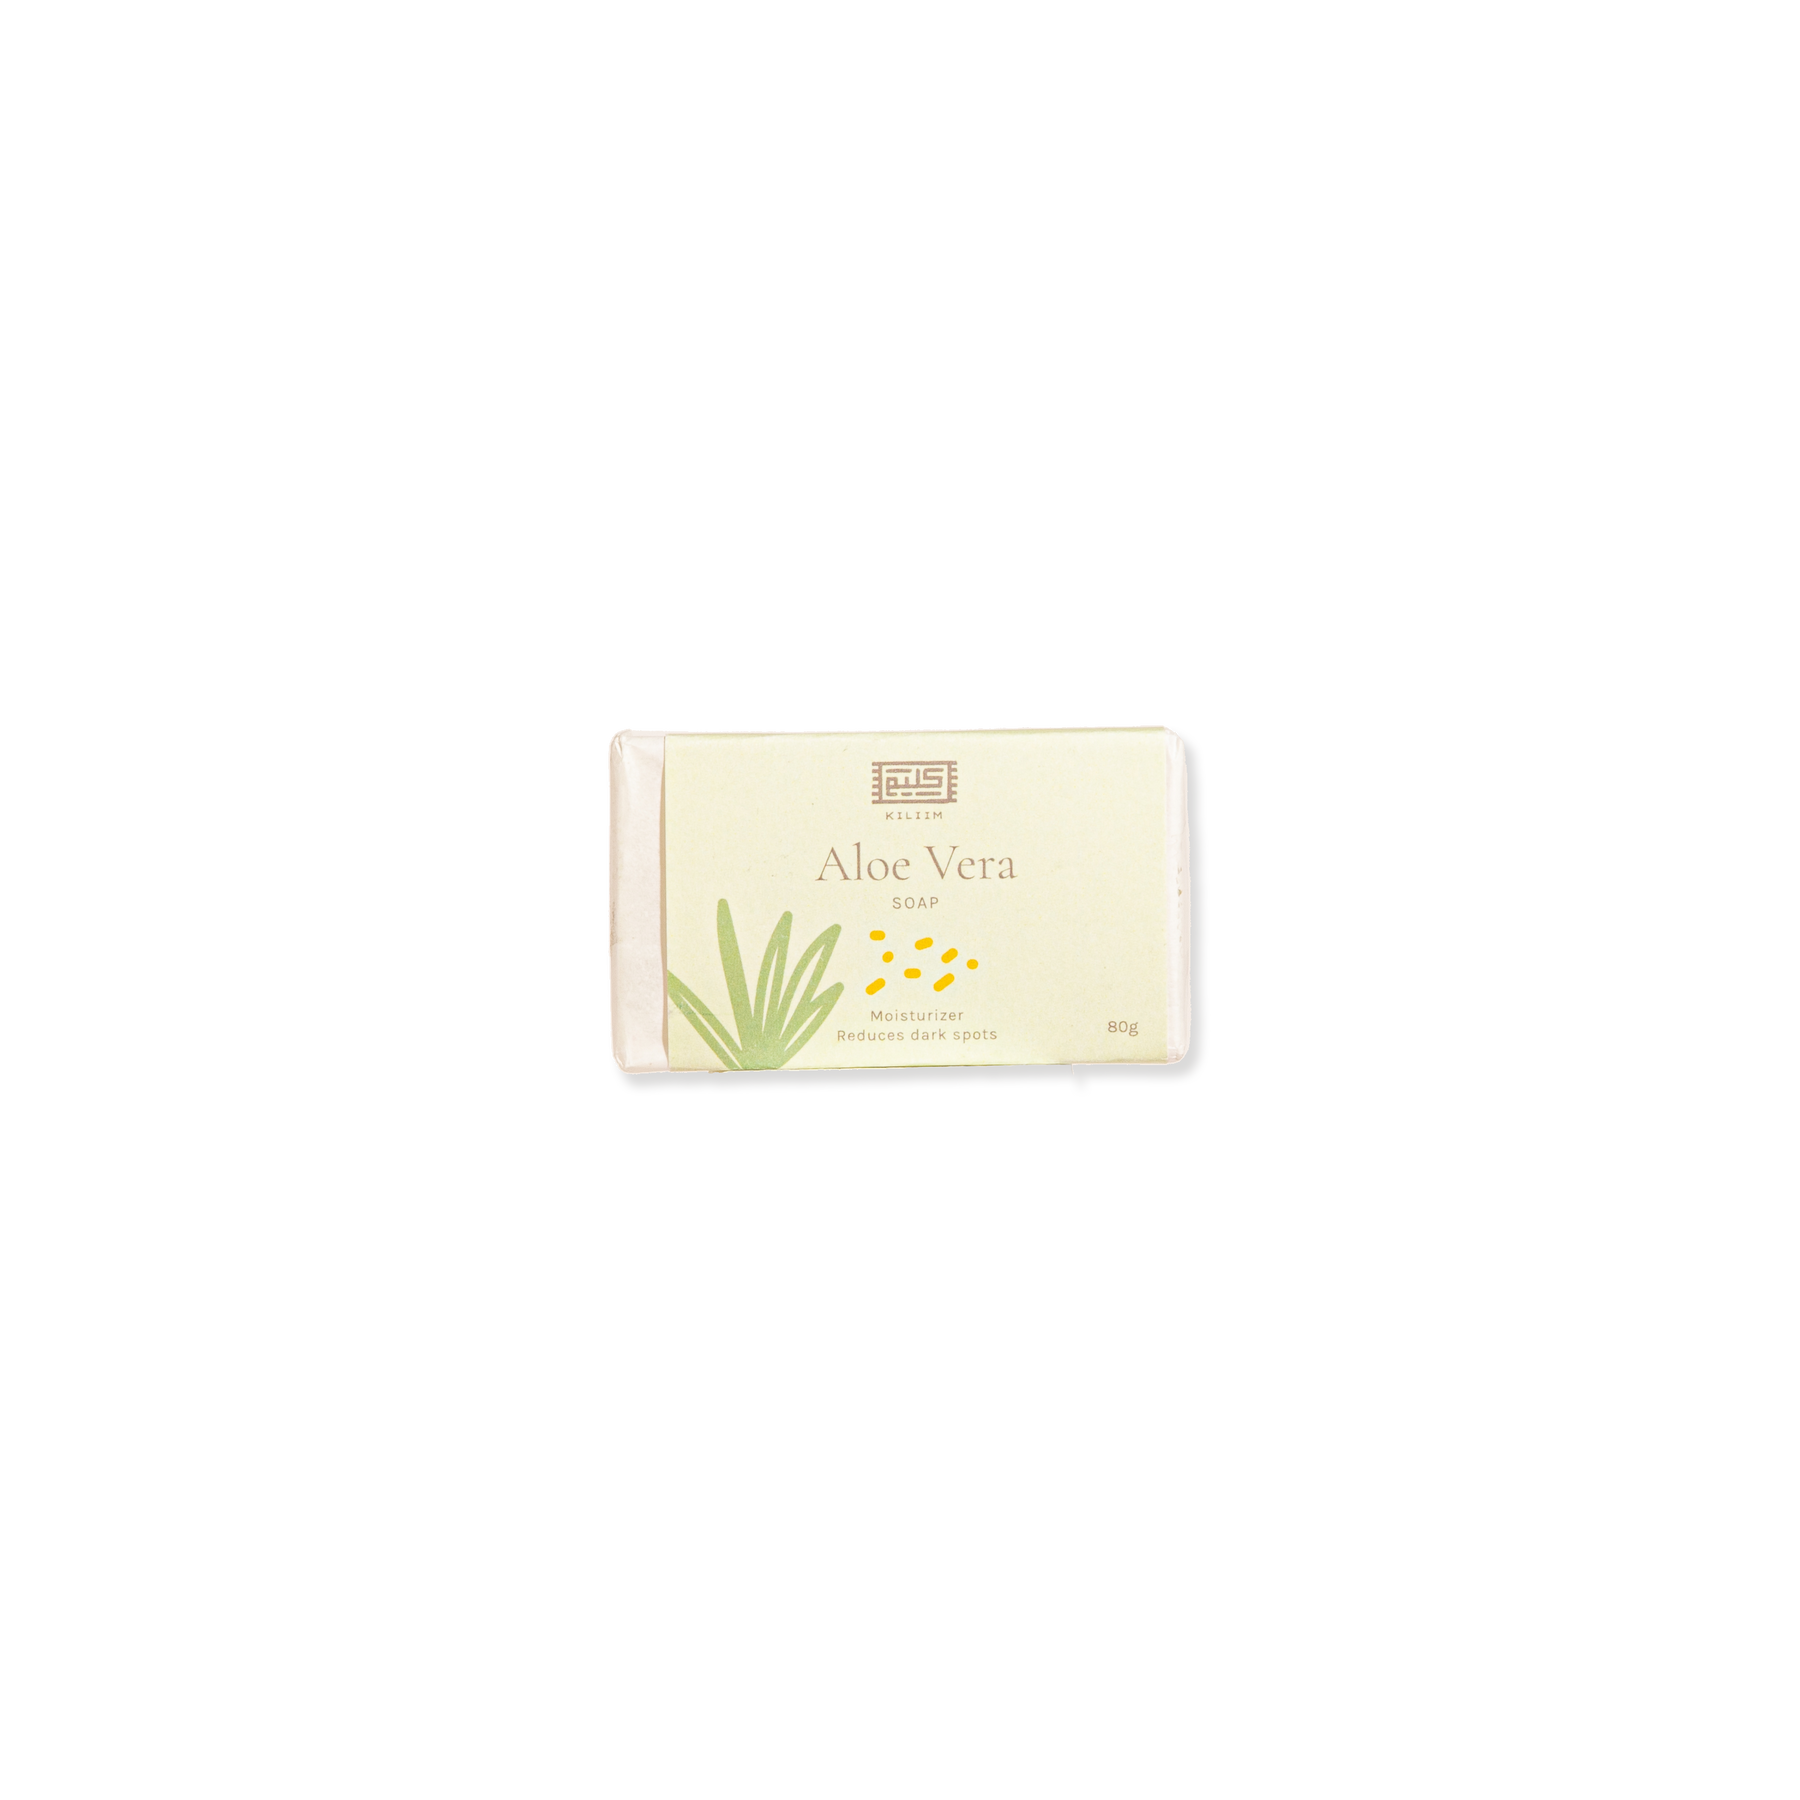 Aloe Vera soap bar